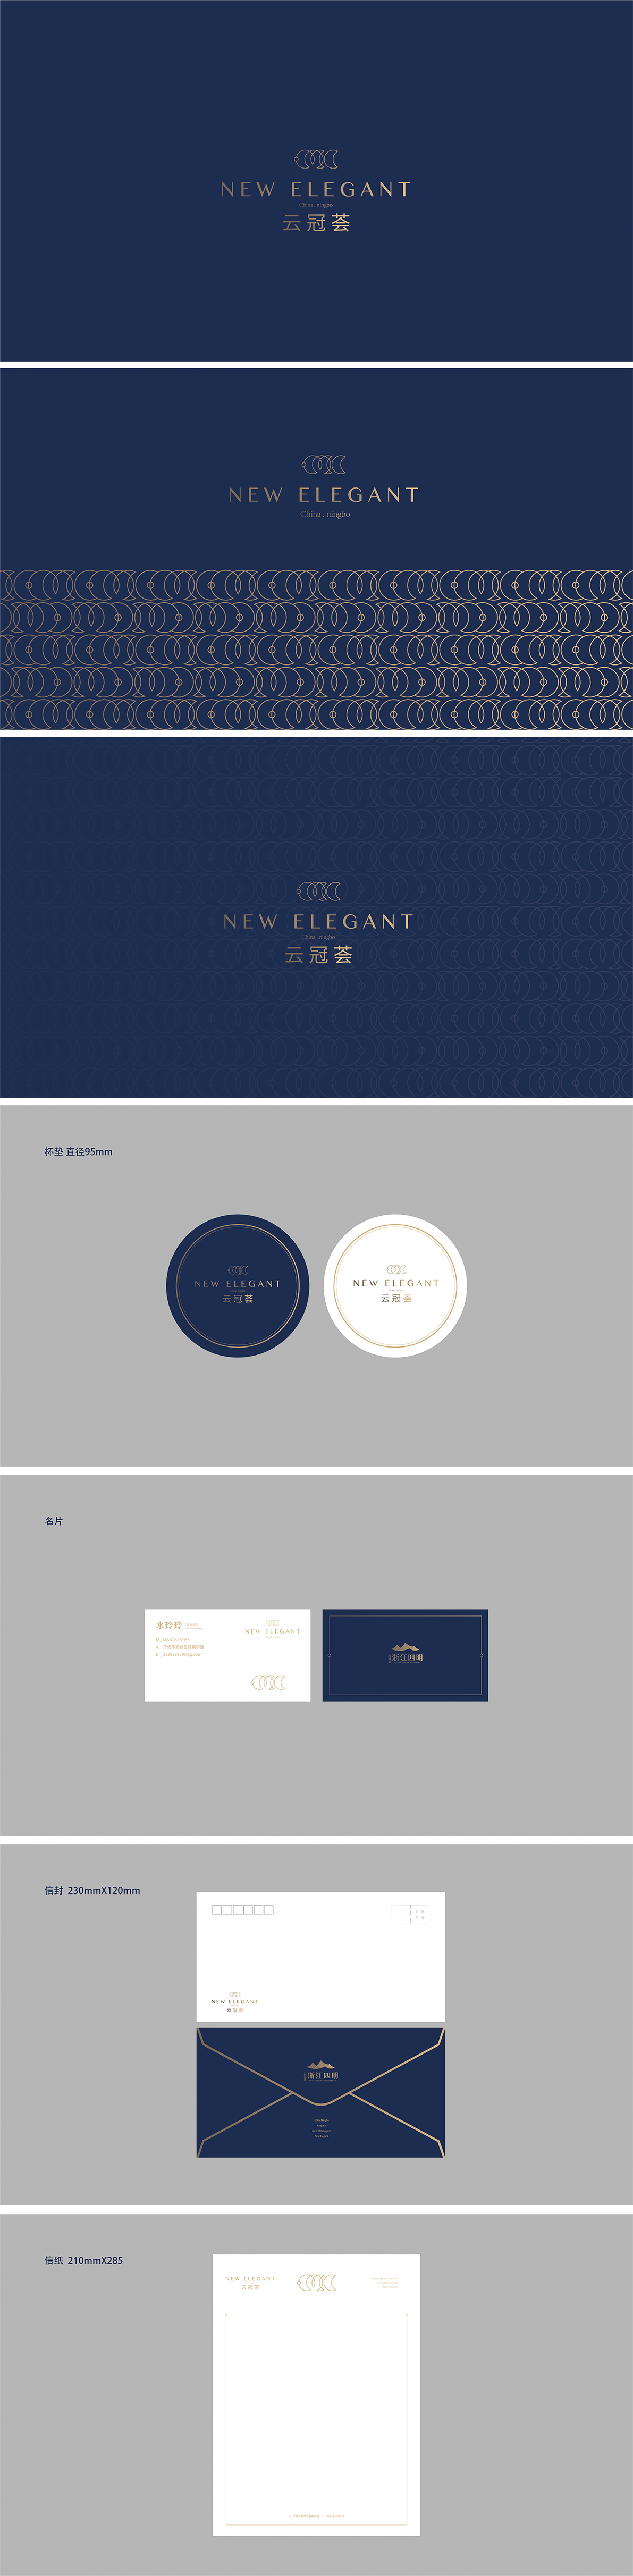 云冠薈酒店logo及宣傳品設計案例圖0